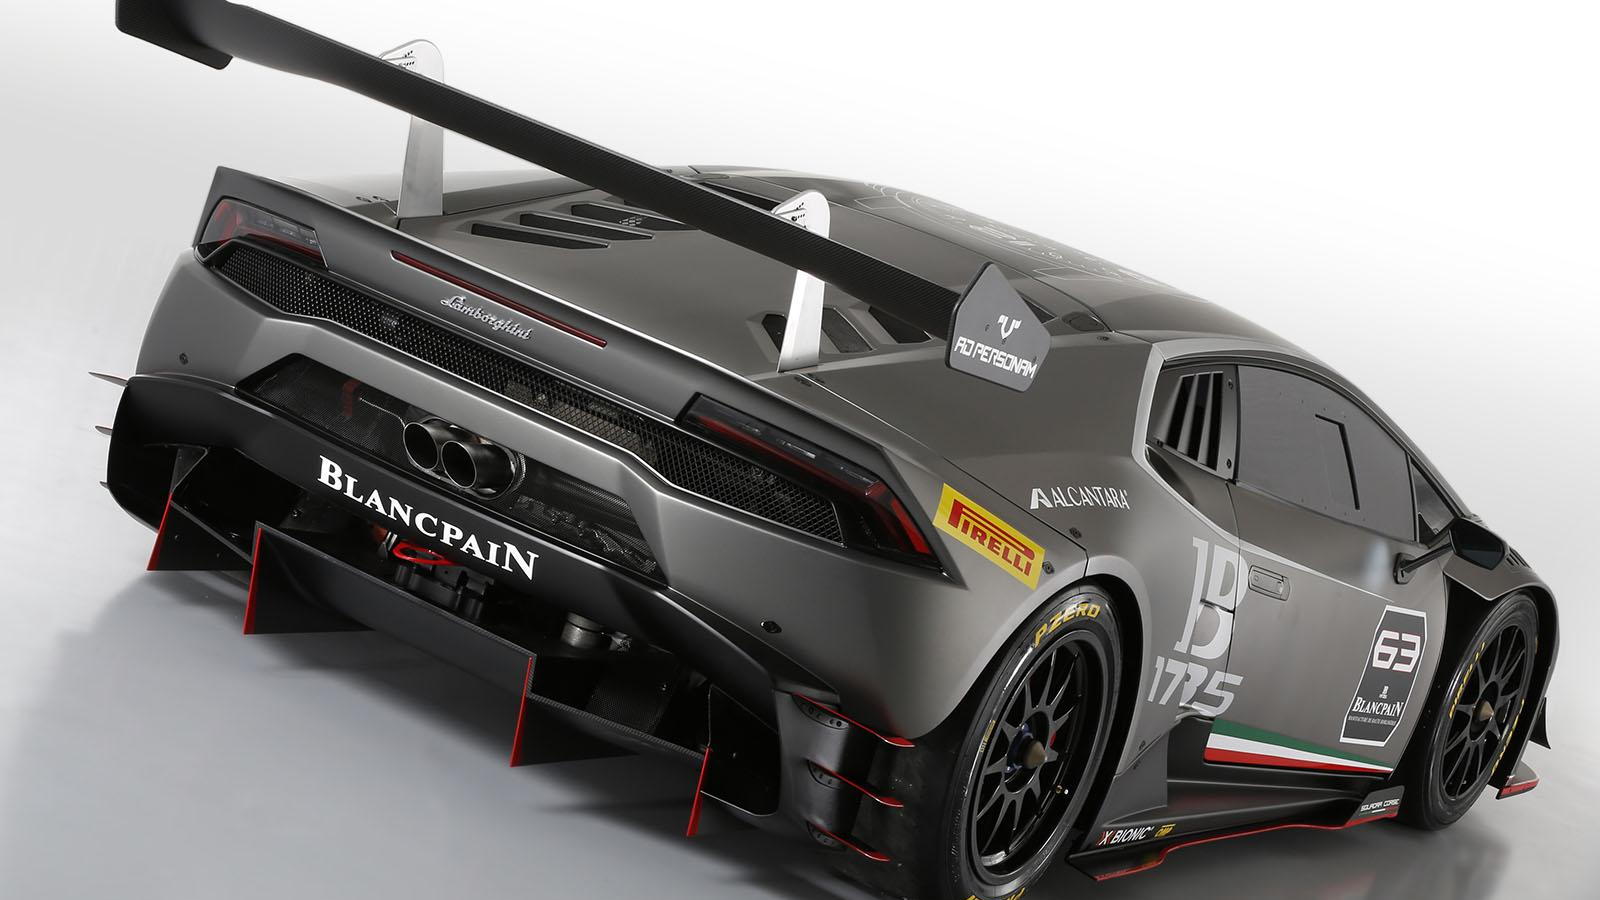 2015 Lamborghini Huracán LP 620-2 Super Trofeo race car